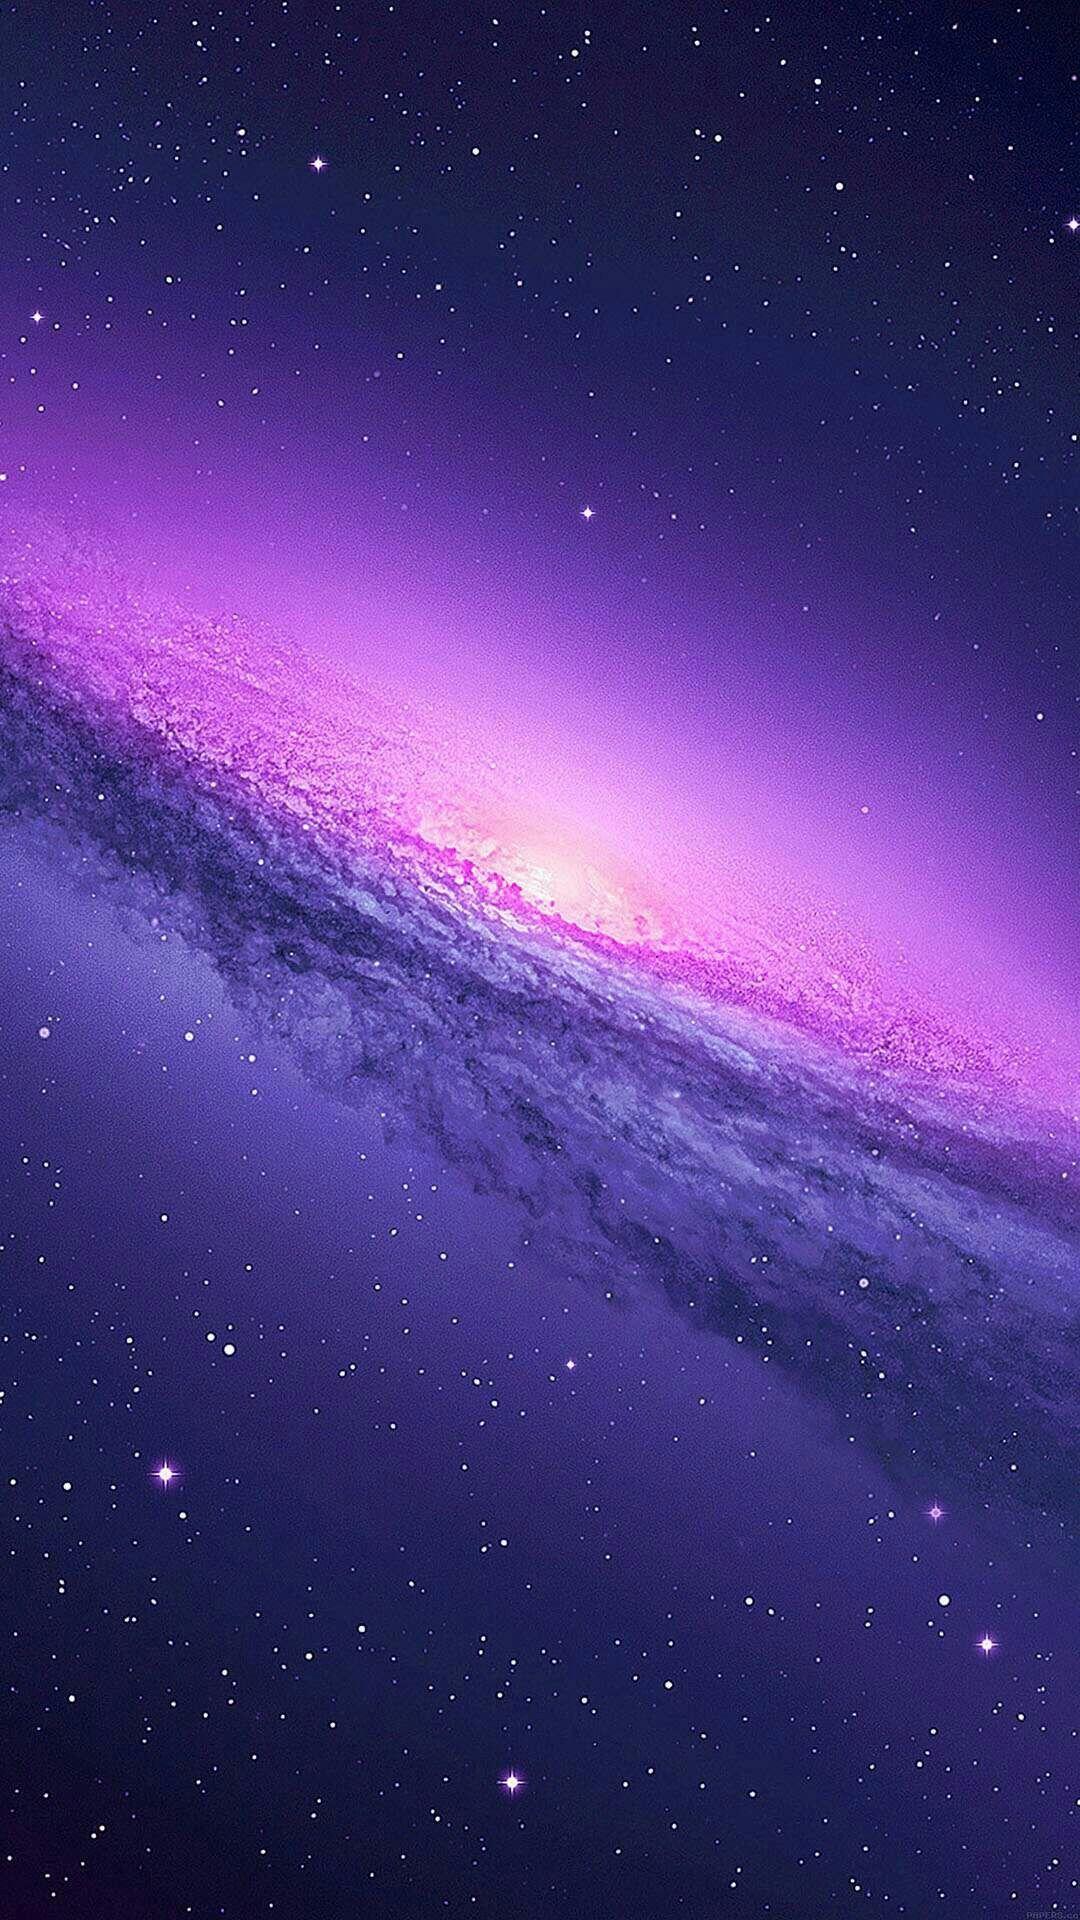 Khi bạn nhìn thấy hình ảnh của Cool Purple Galaxy, đó chính là cảm giác như bạn đang bước vào một vũ trụ đầy bí ẩn. Tận hưởng những trải nghiệm tuyệt vời nhất trong hành trình khám phá vũ trụ với những đám mây tím đẹp mắt, những ngôi sao rực rỡ trên trời đêm.